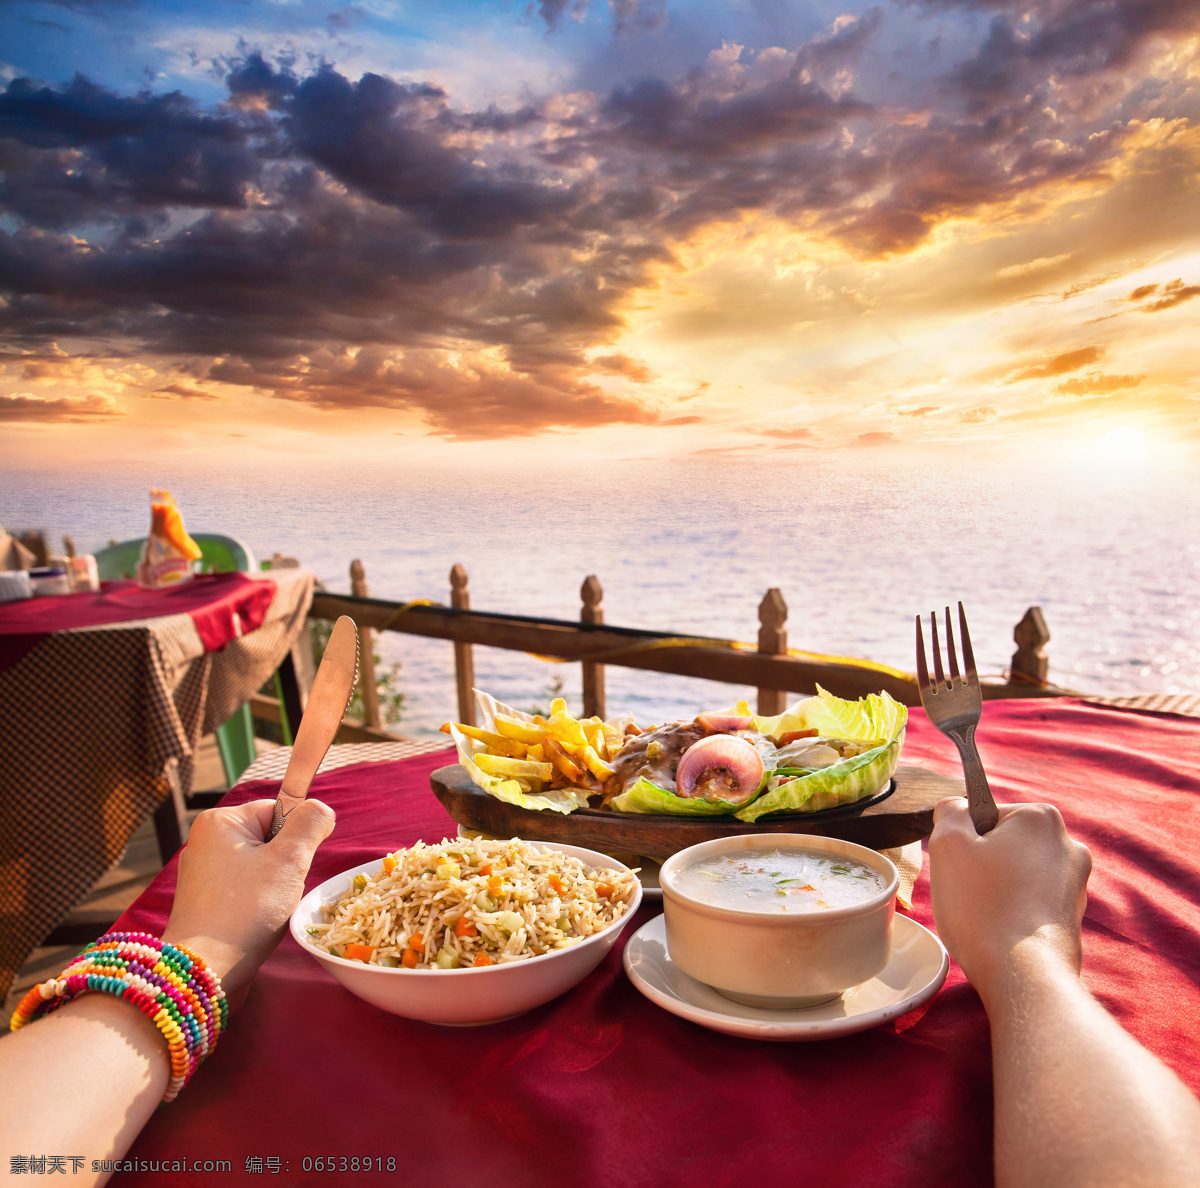 海边 餐桌 上 双手 美食 印度 食物 印度美食 外国美食 餐饮美食